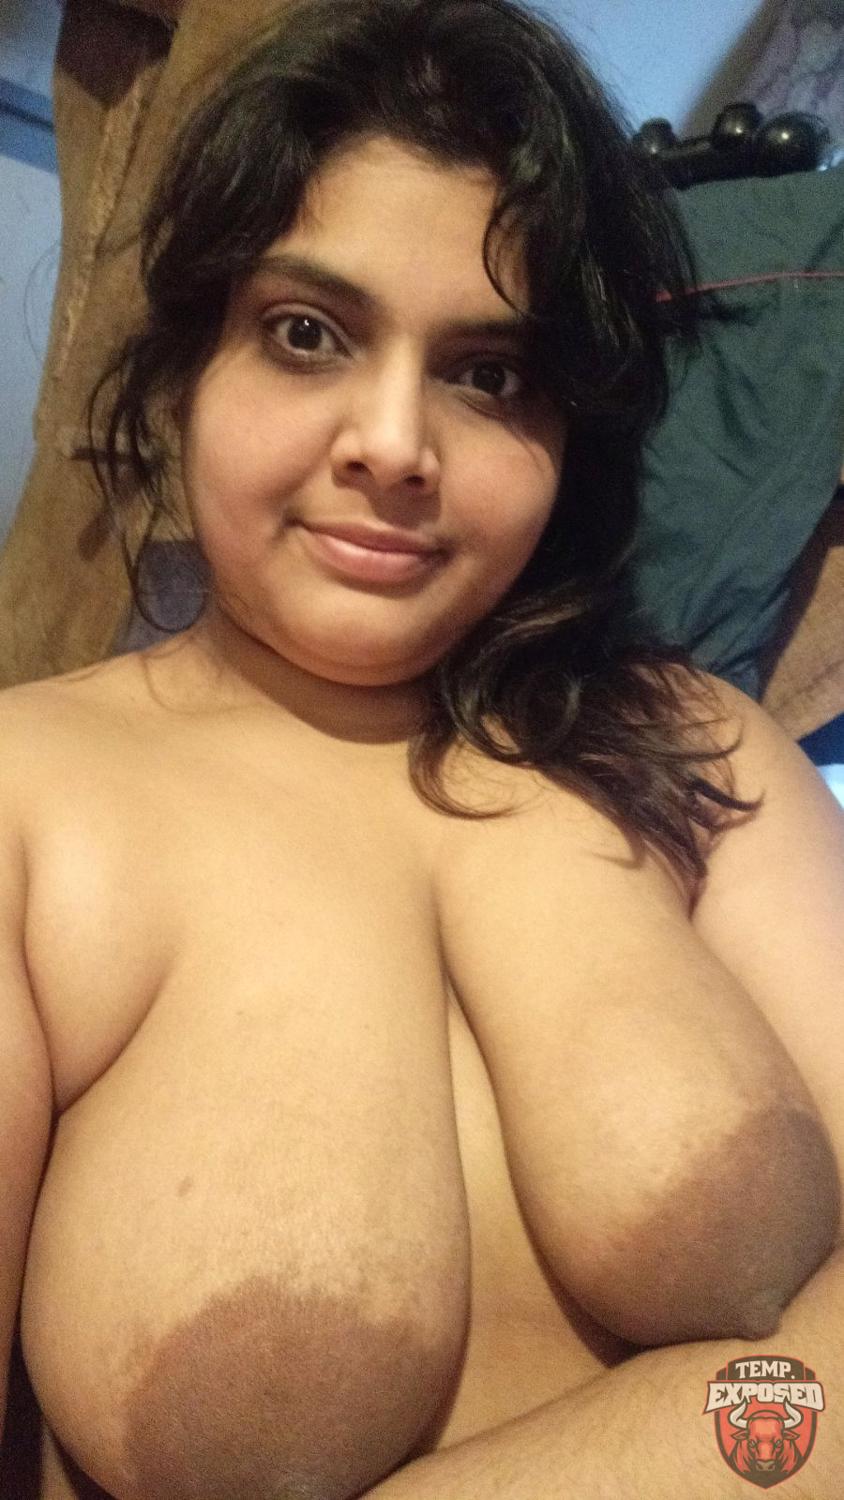 Hot Indian Wife Porn - Maya - Hot Indian Wife - Porn Videos & Photos - EroMe